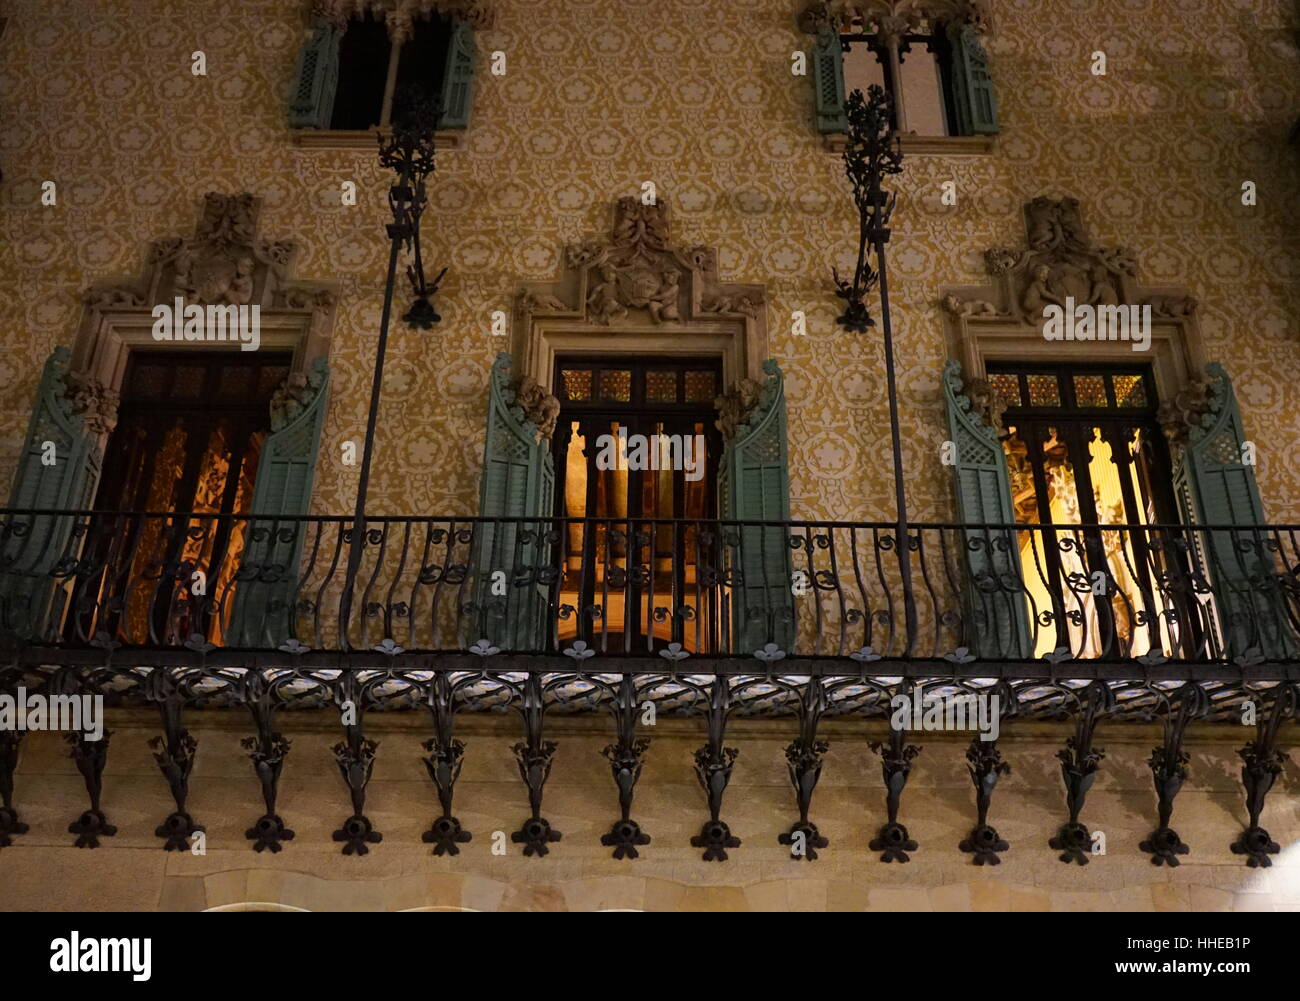 Casa Amatller, un bâtiment dans le style moderniste de Barcelone, conçu par Josep Puig i Cadafalch. Balcon de la Casa Amatller de Barcelone. L'escalier sur la droite, en face de la grande série de portes en verre teinté, conduire à la cour d'escalier. Banque D'Images